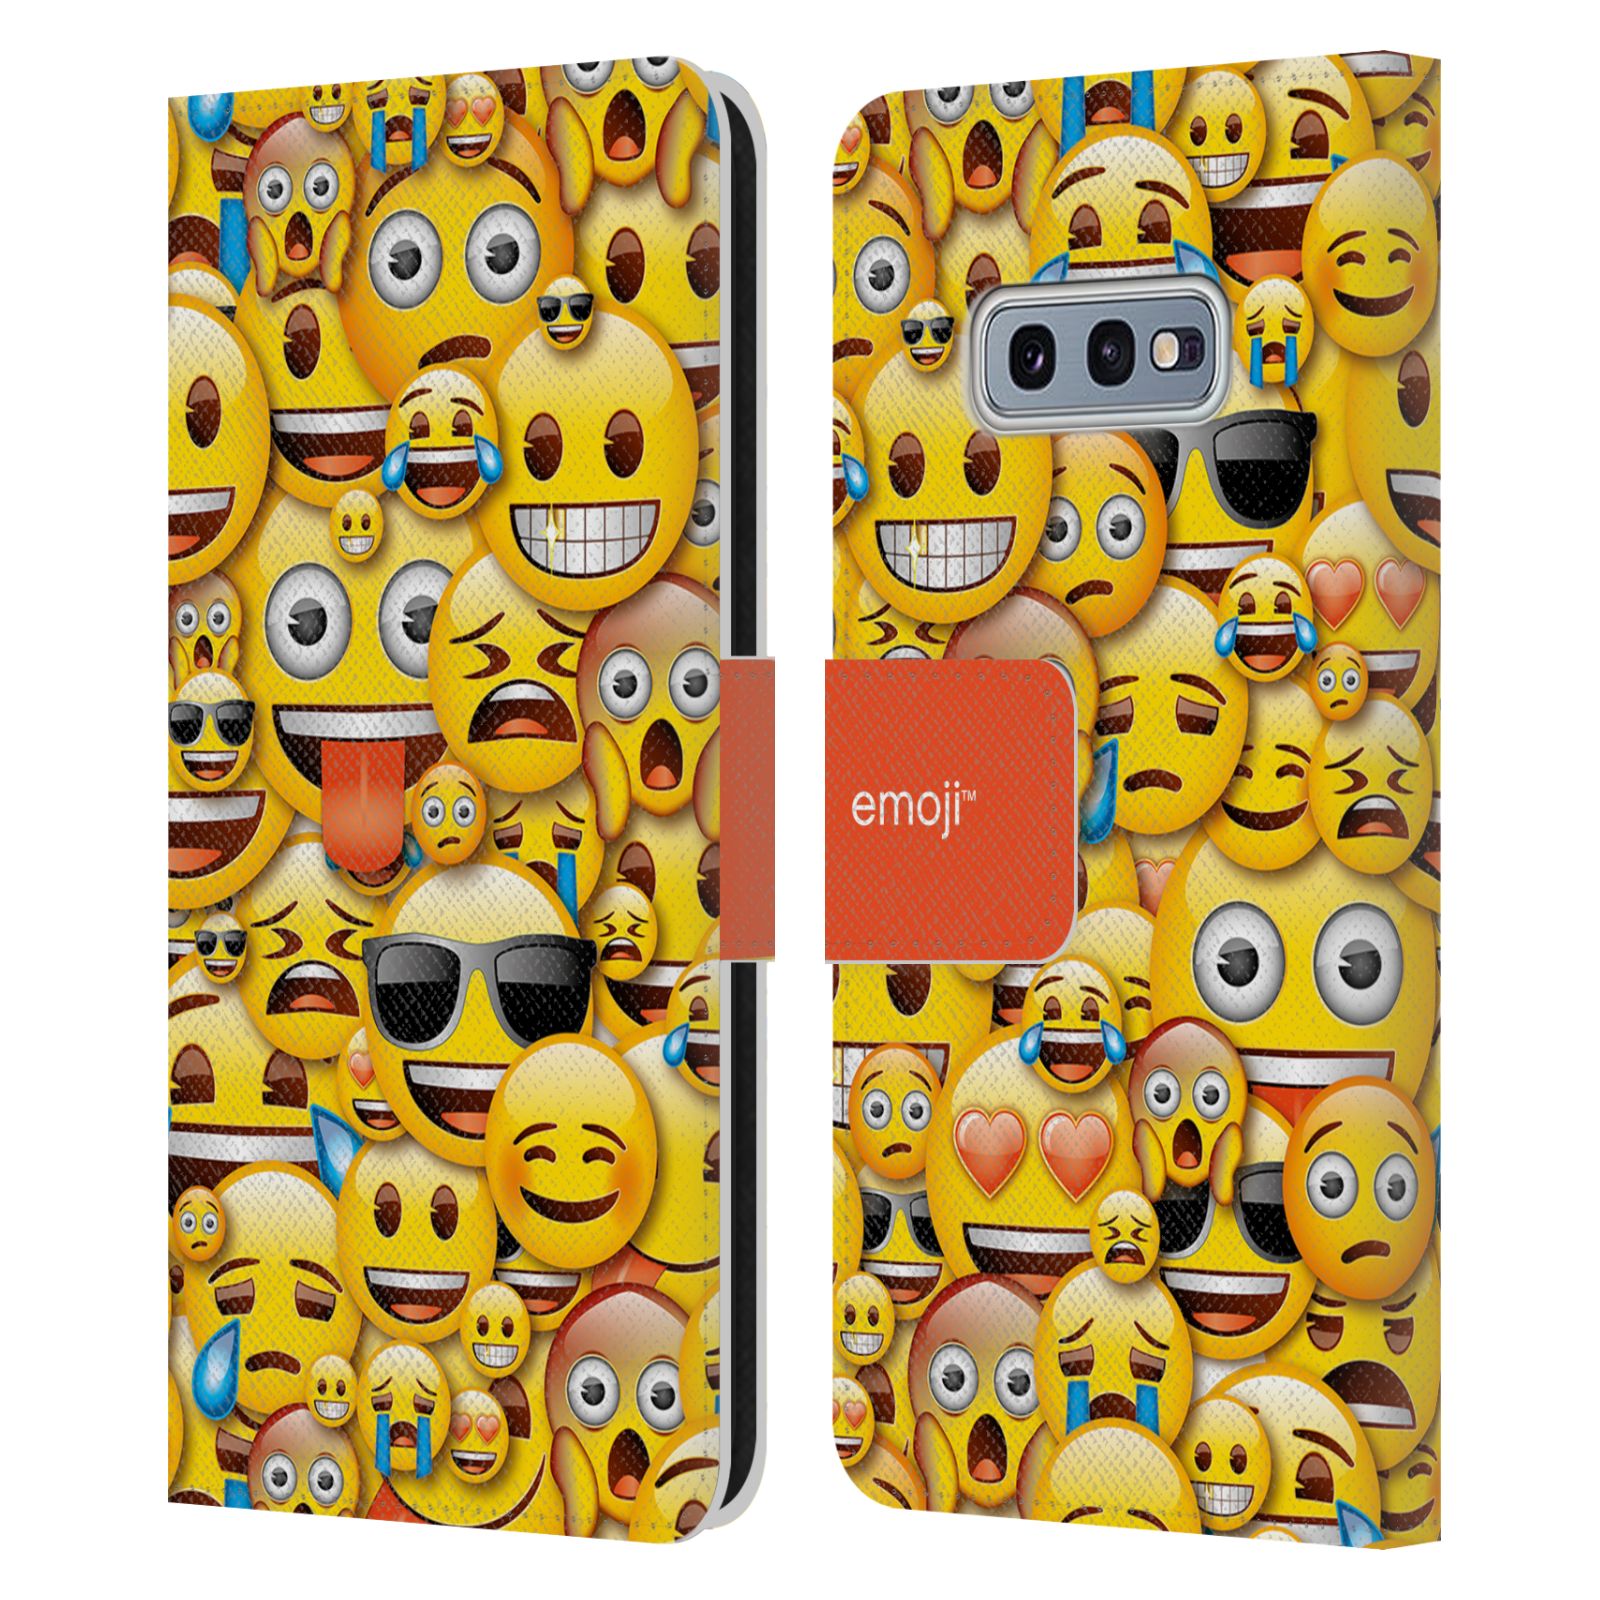 Pouzdro HEAD CASE na mobil Samsung Galaxy S10e  Emoji hromada smajlíků